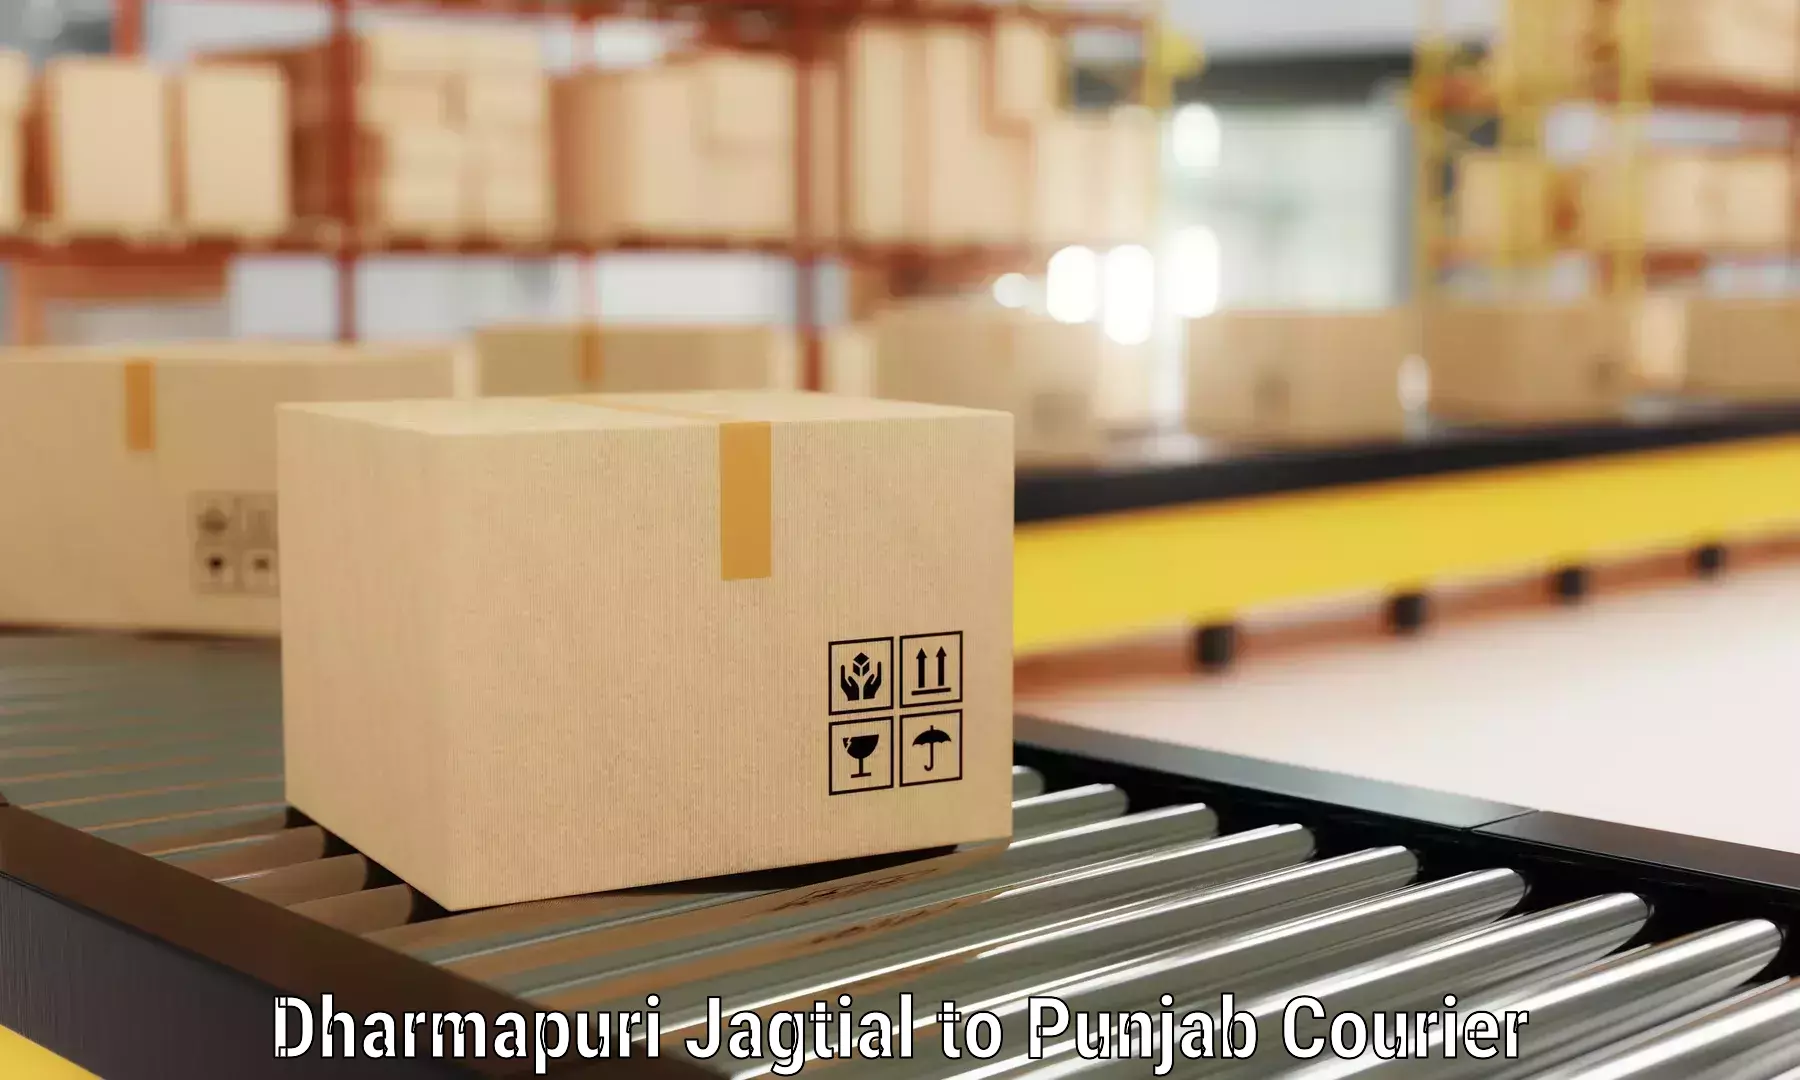 Efficient moving strategies Dharmapuri Jagtial to Sangrur